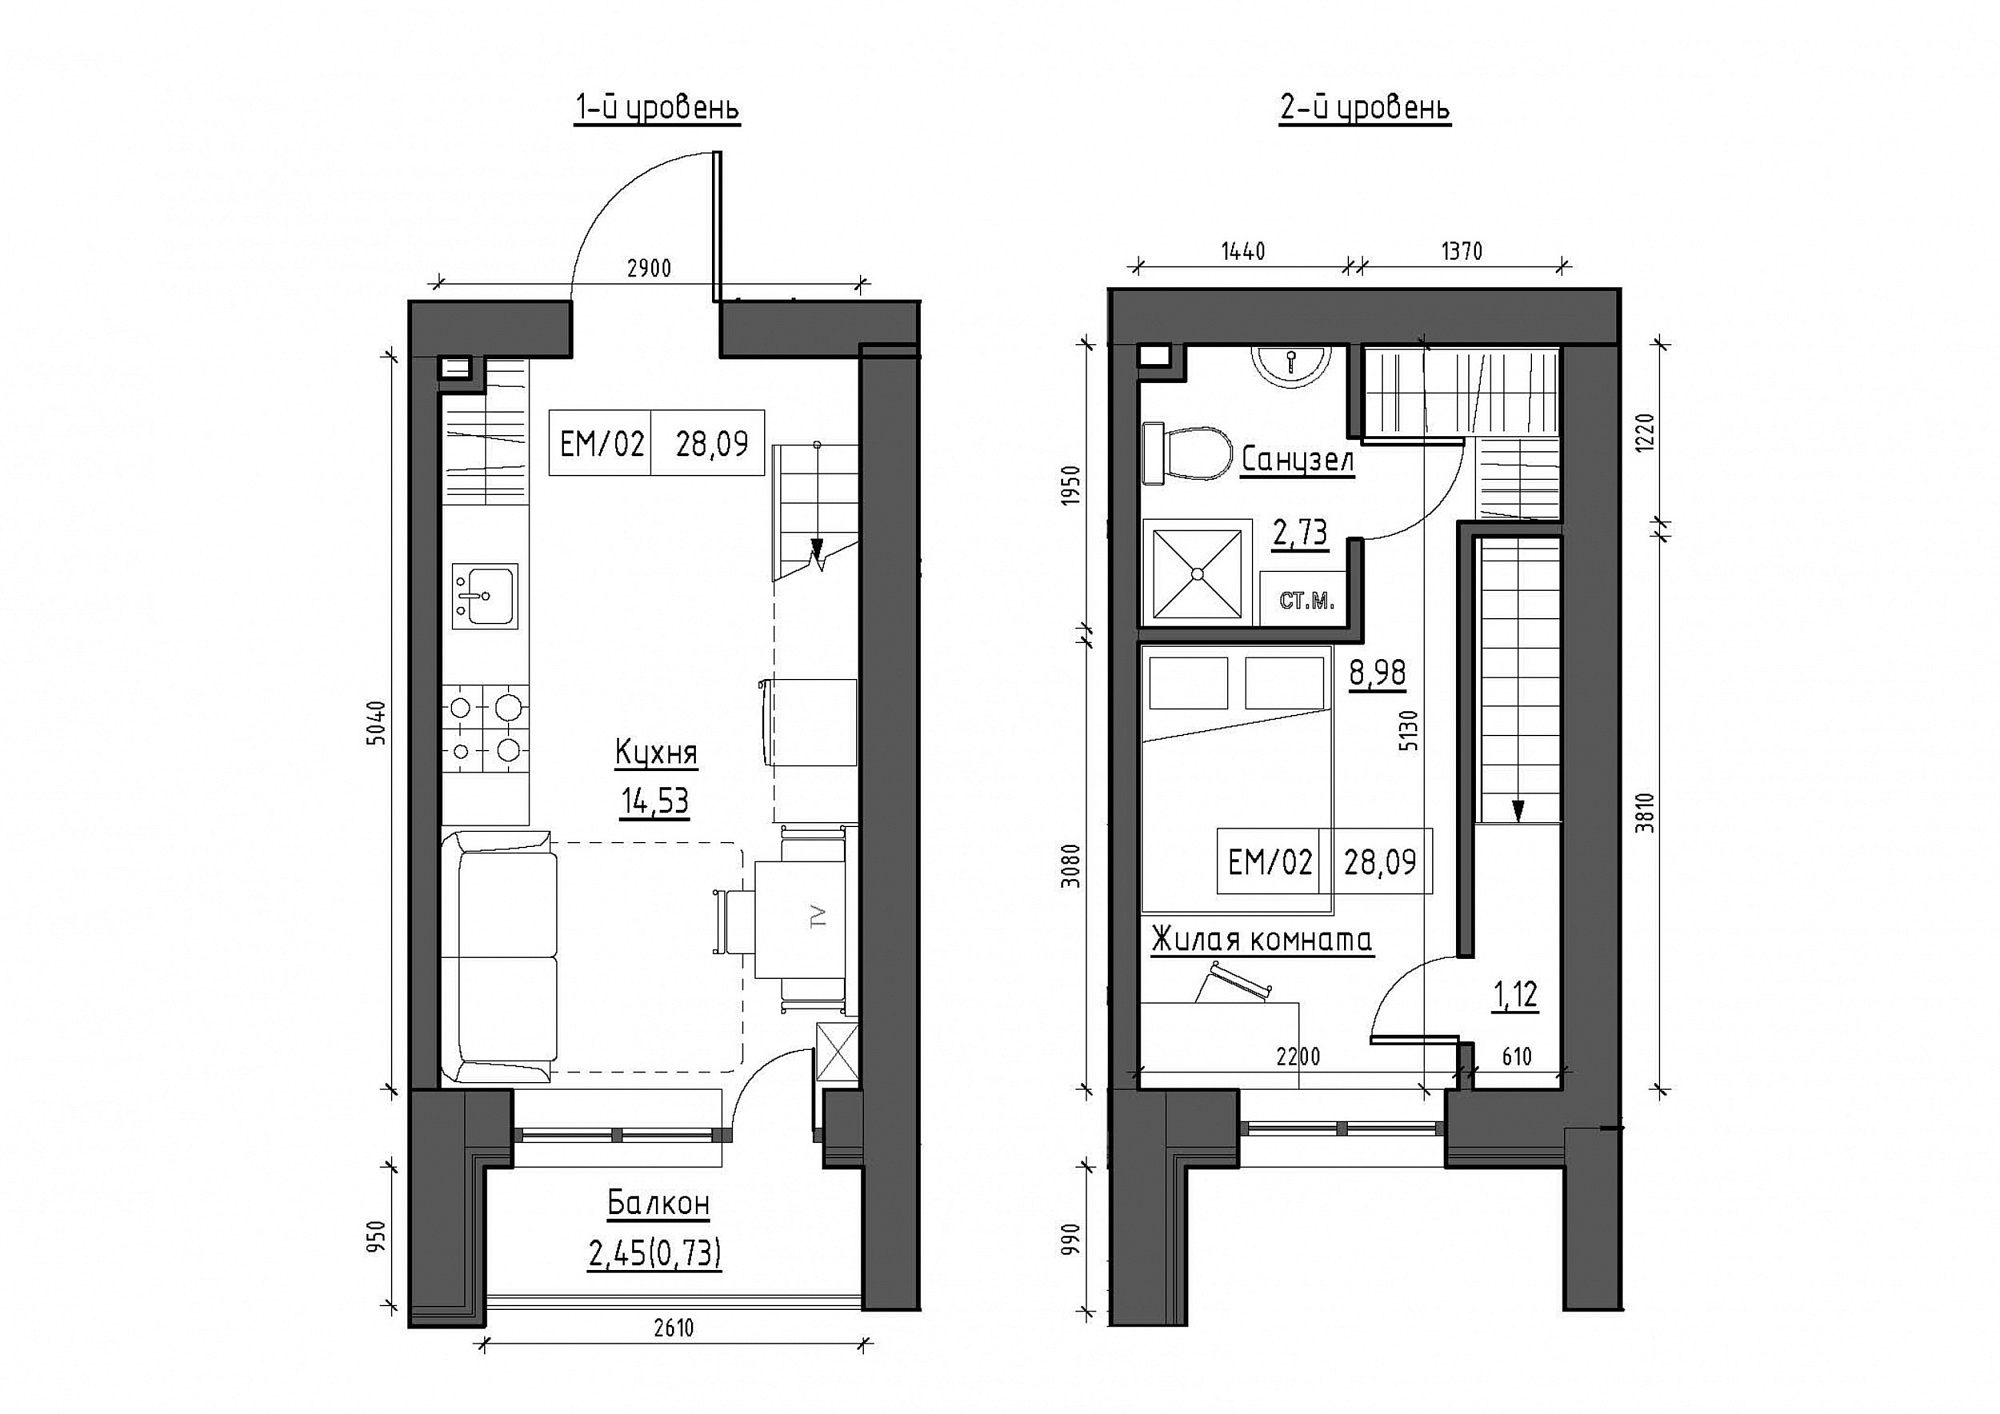 Planning 2-lvl flats area 28.09m2, KS-011-05/0009.